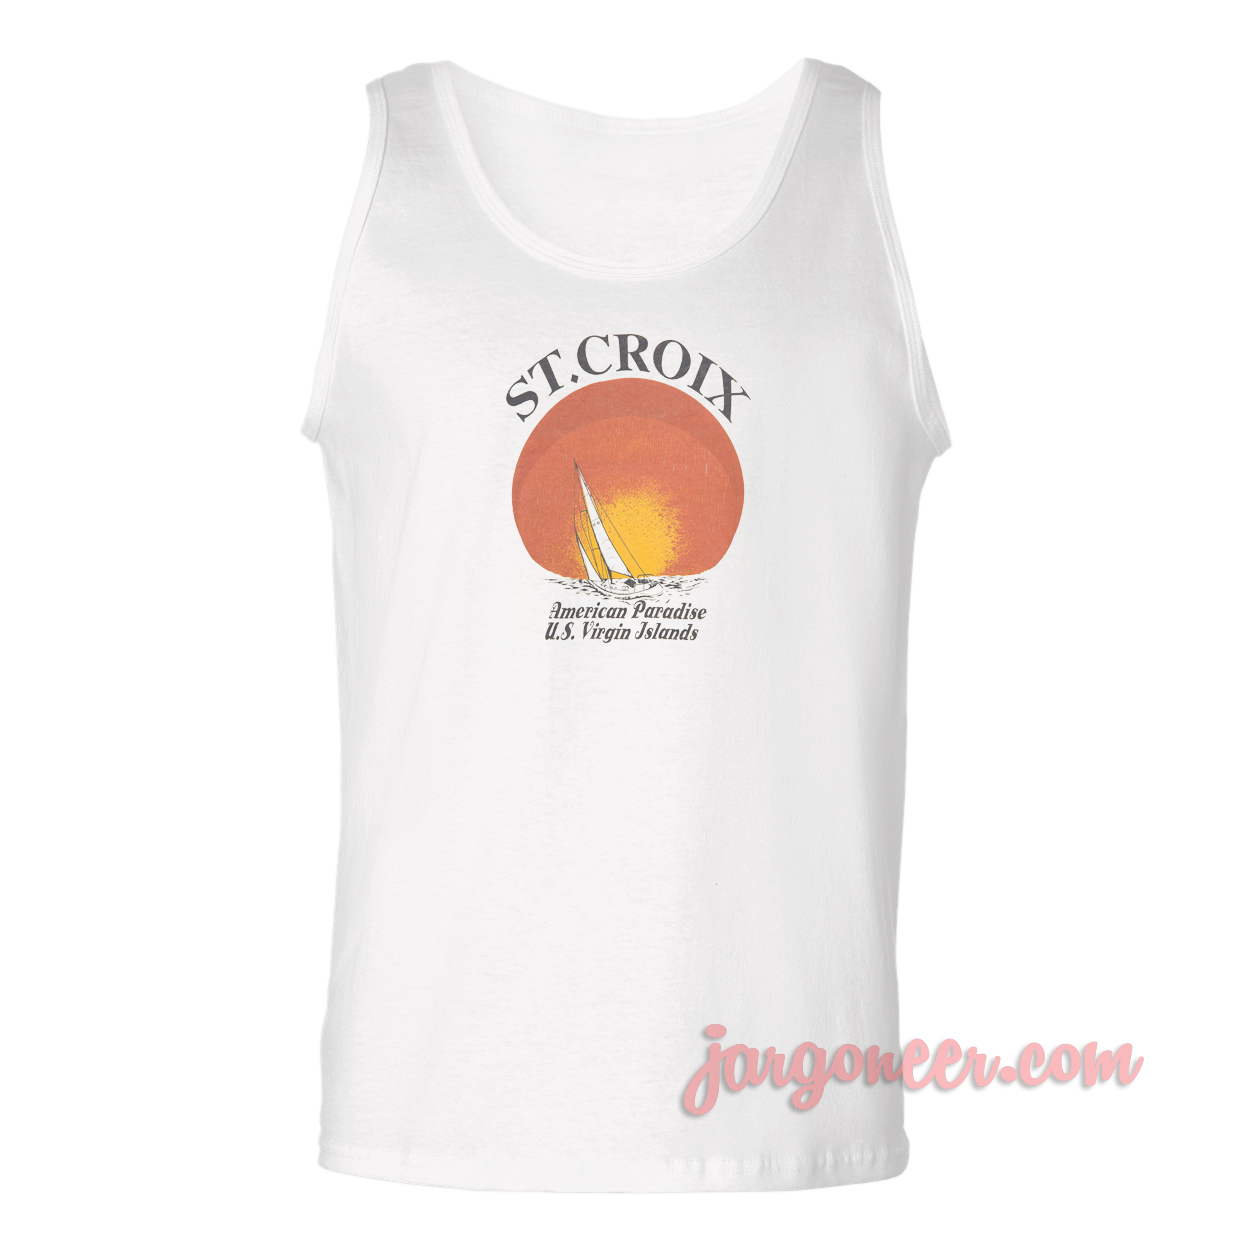 ST Croix American Paradise - Shop Unique Graphic Cool Shirt Designs